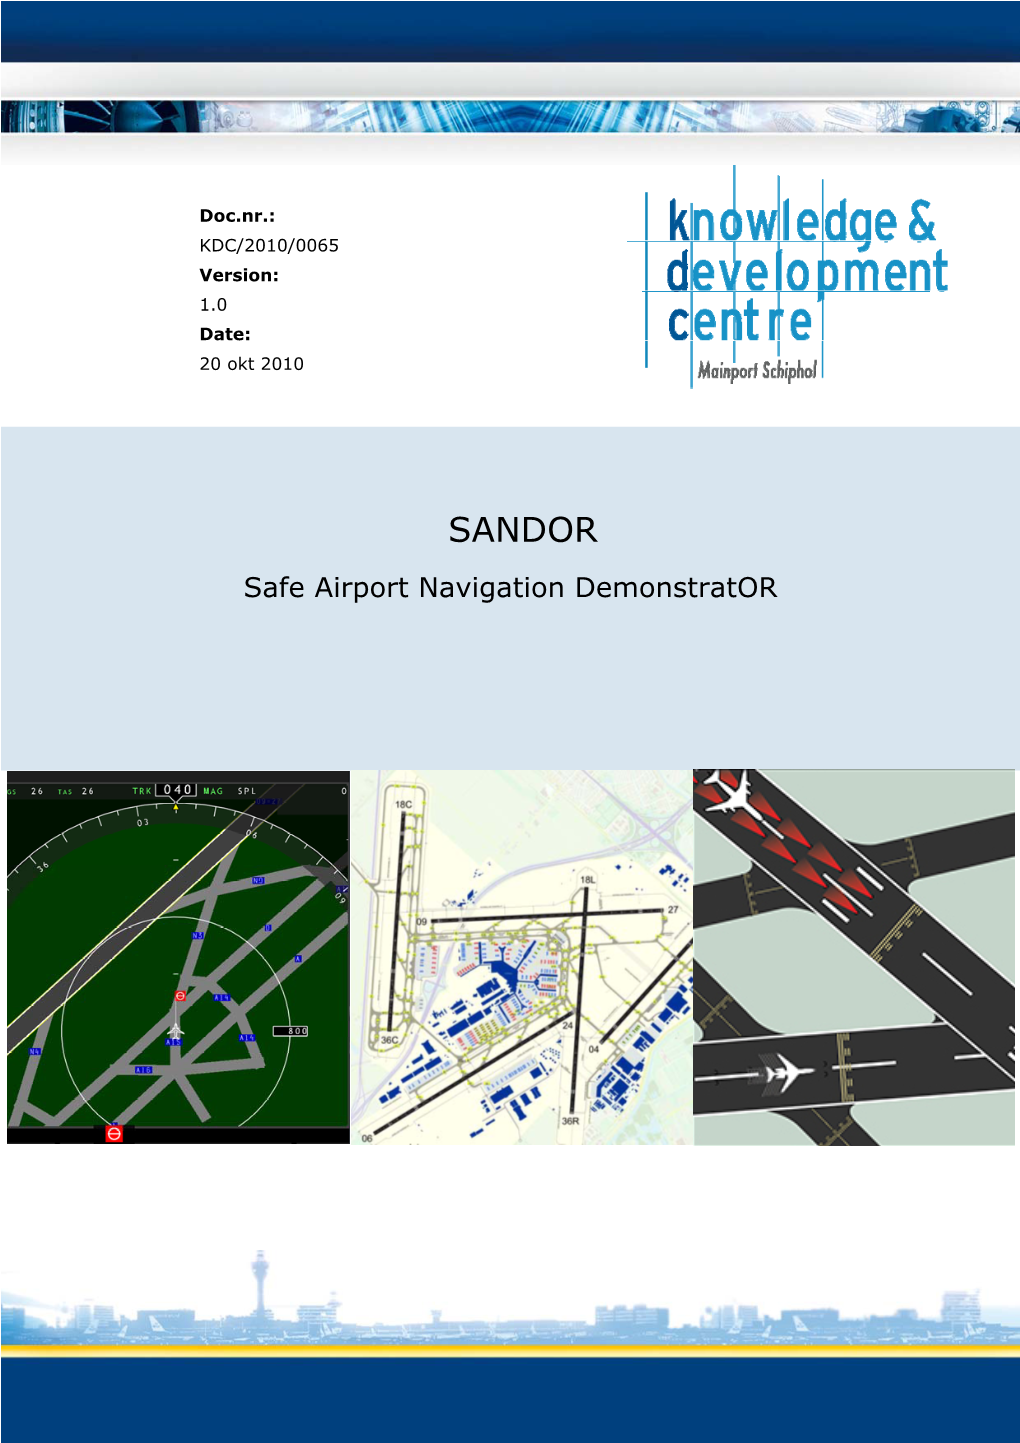 SANDOR Safe Airport Navigation Demonstrator